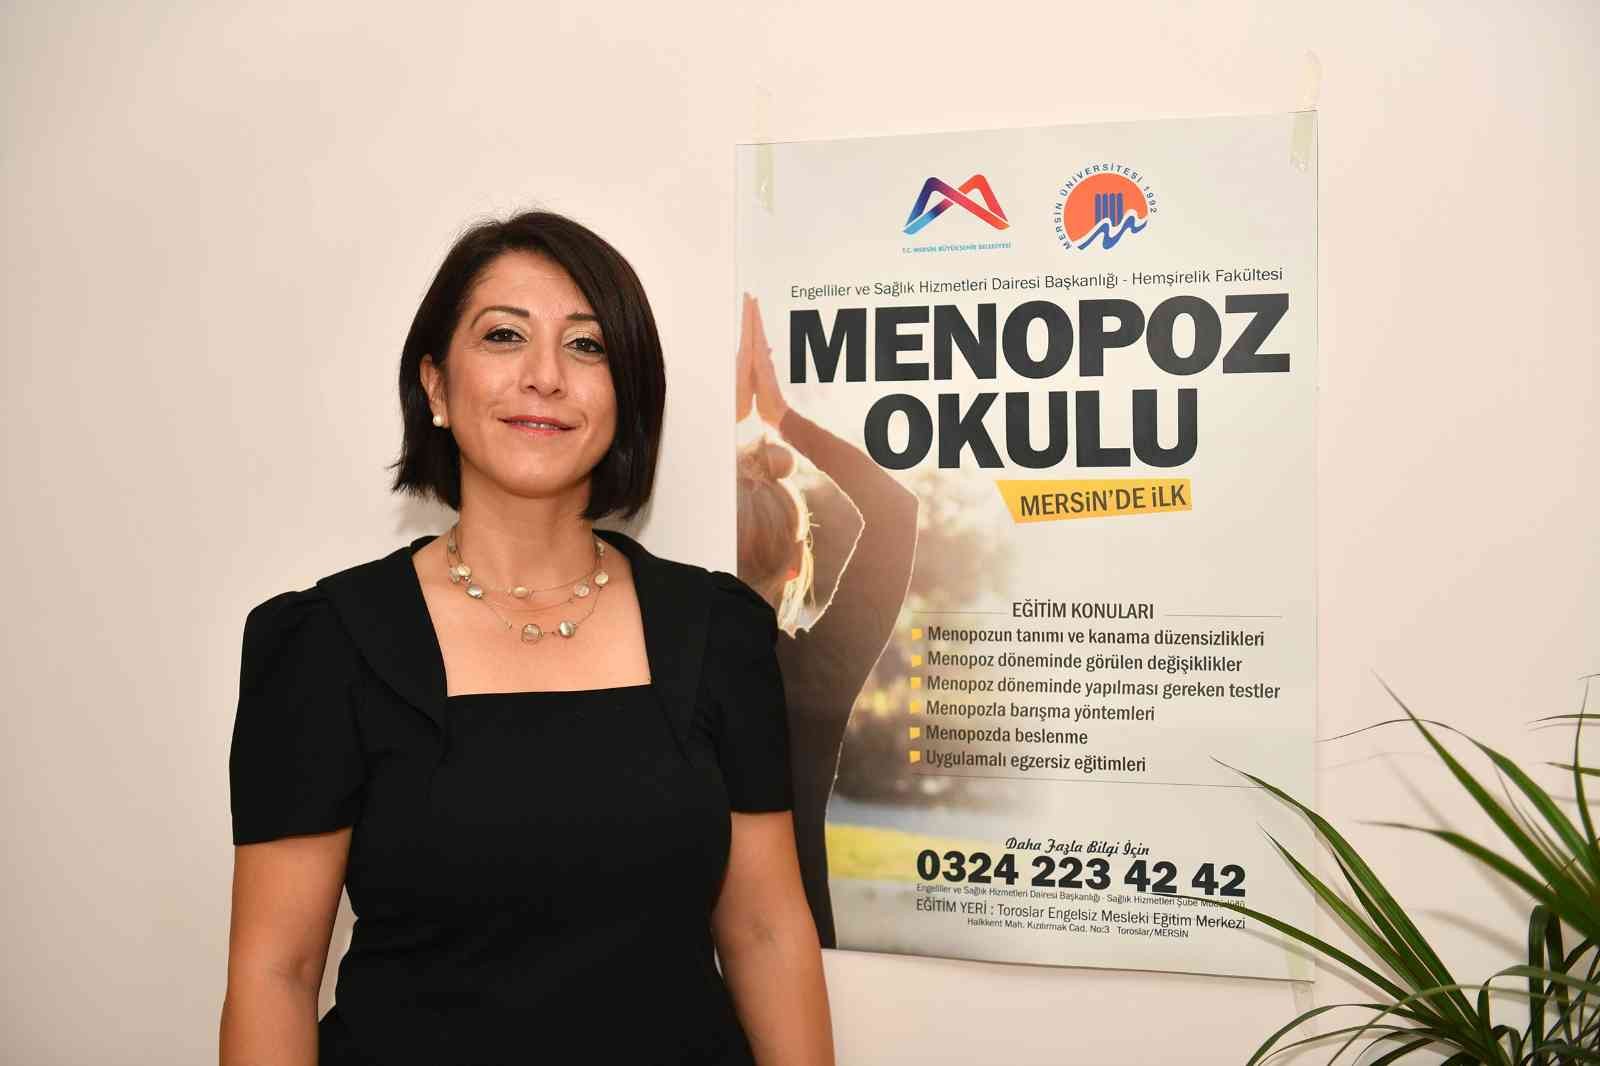 Prof. Dr. Yılmaz: “Menopoz bir hastalık değildir, normal bir süreçtir” #mersin